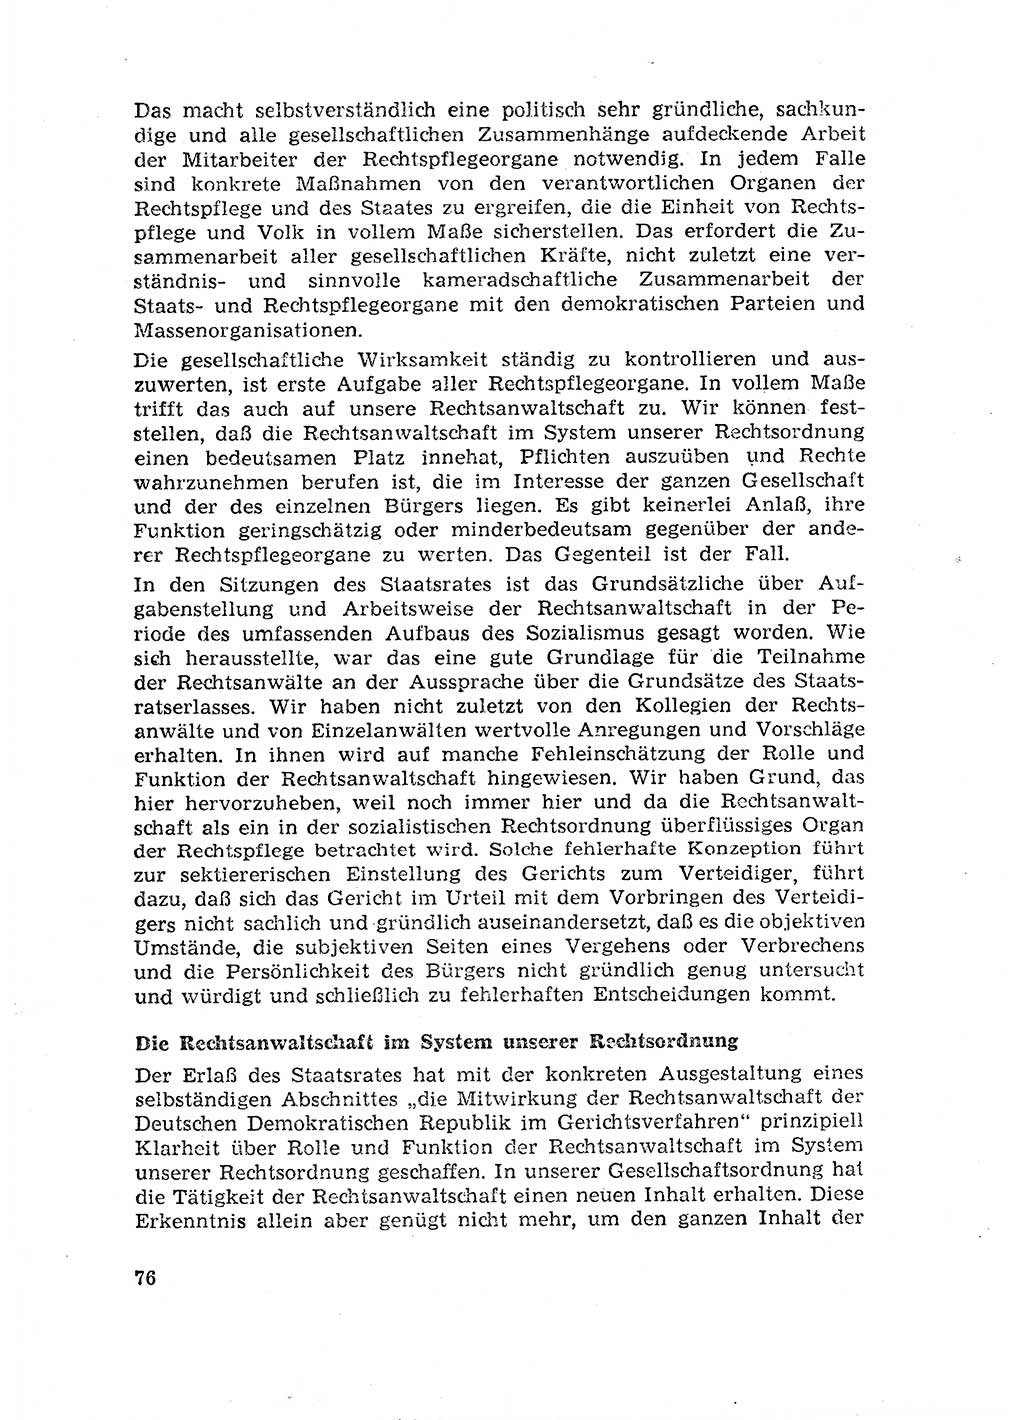 Rechtspflegeerlaß [Deutsche Demokratische Republik (DDR)] 1963, Seite 76 (R.-Pfl.-Erl. DDR 1963, S. 76)